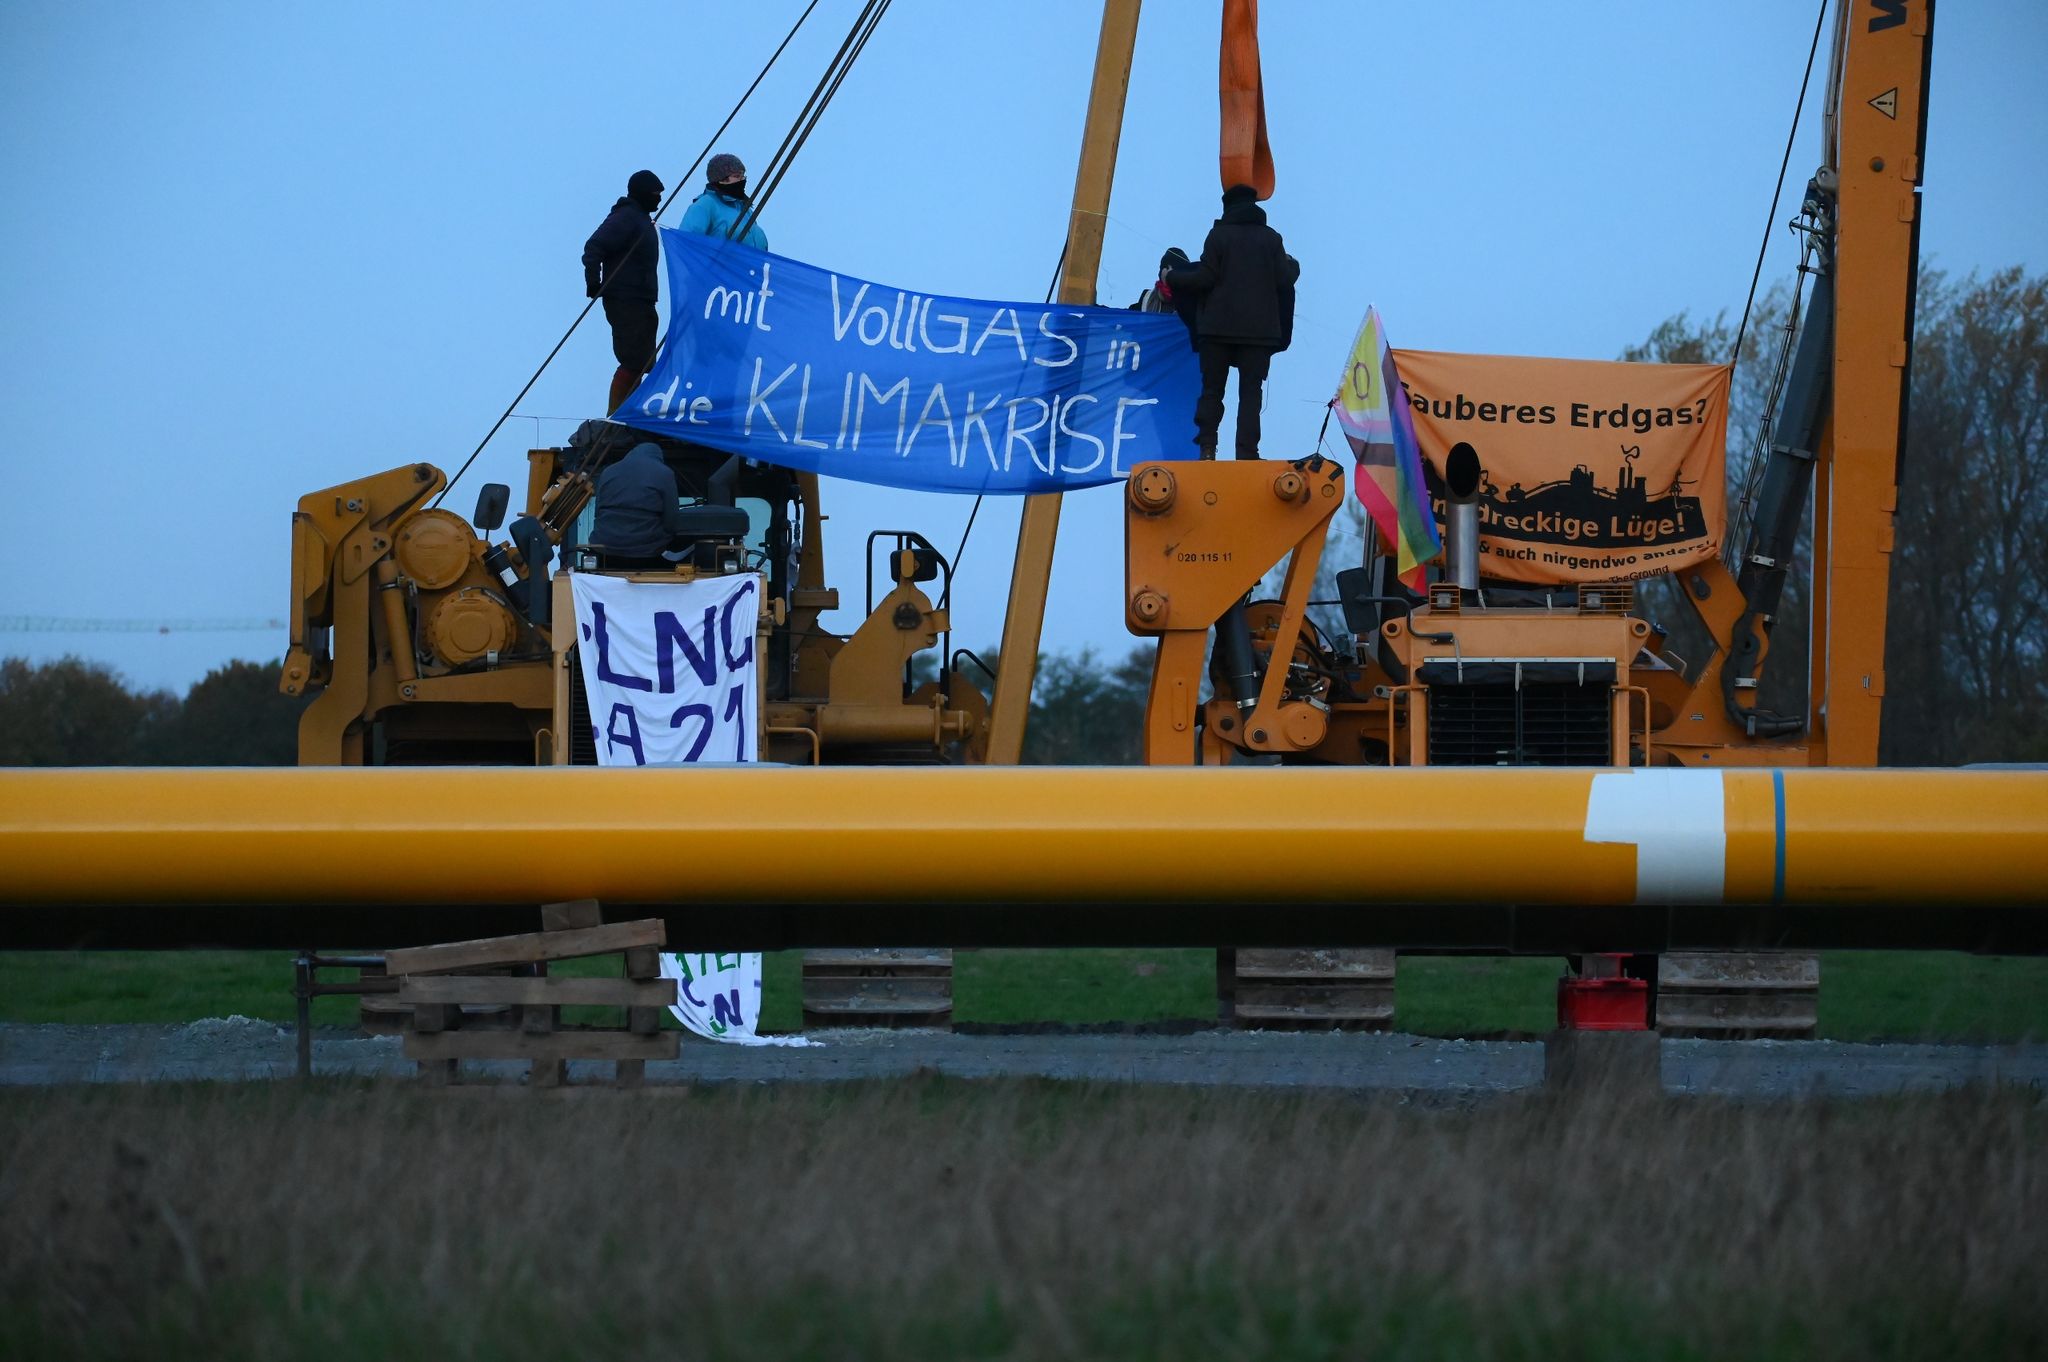 Aktivisten sitzen auf Baufahrzeugen und haben Plakate mit der Aufschrift "mit Vollgas in die Klimakrise" und "Sauberes Erdgas? Eine dreckige Lüge" gespannt.